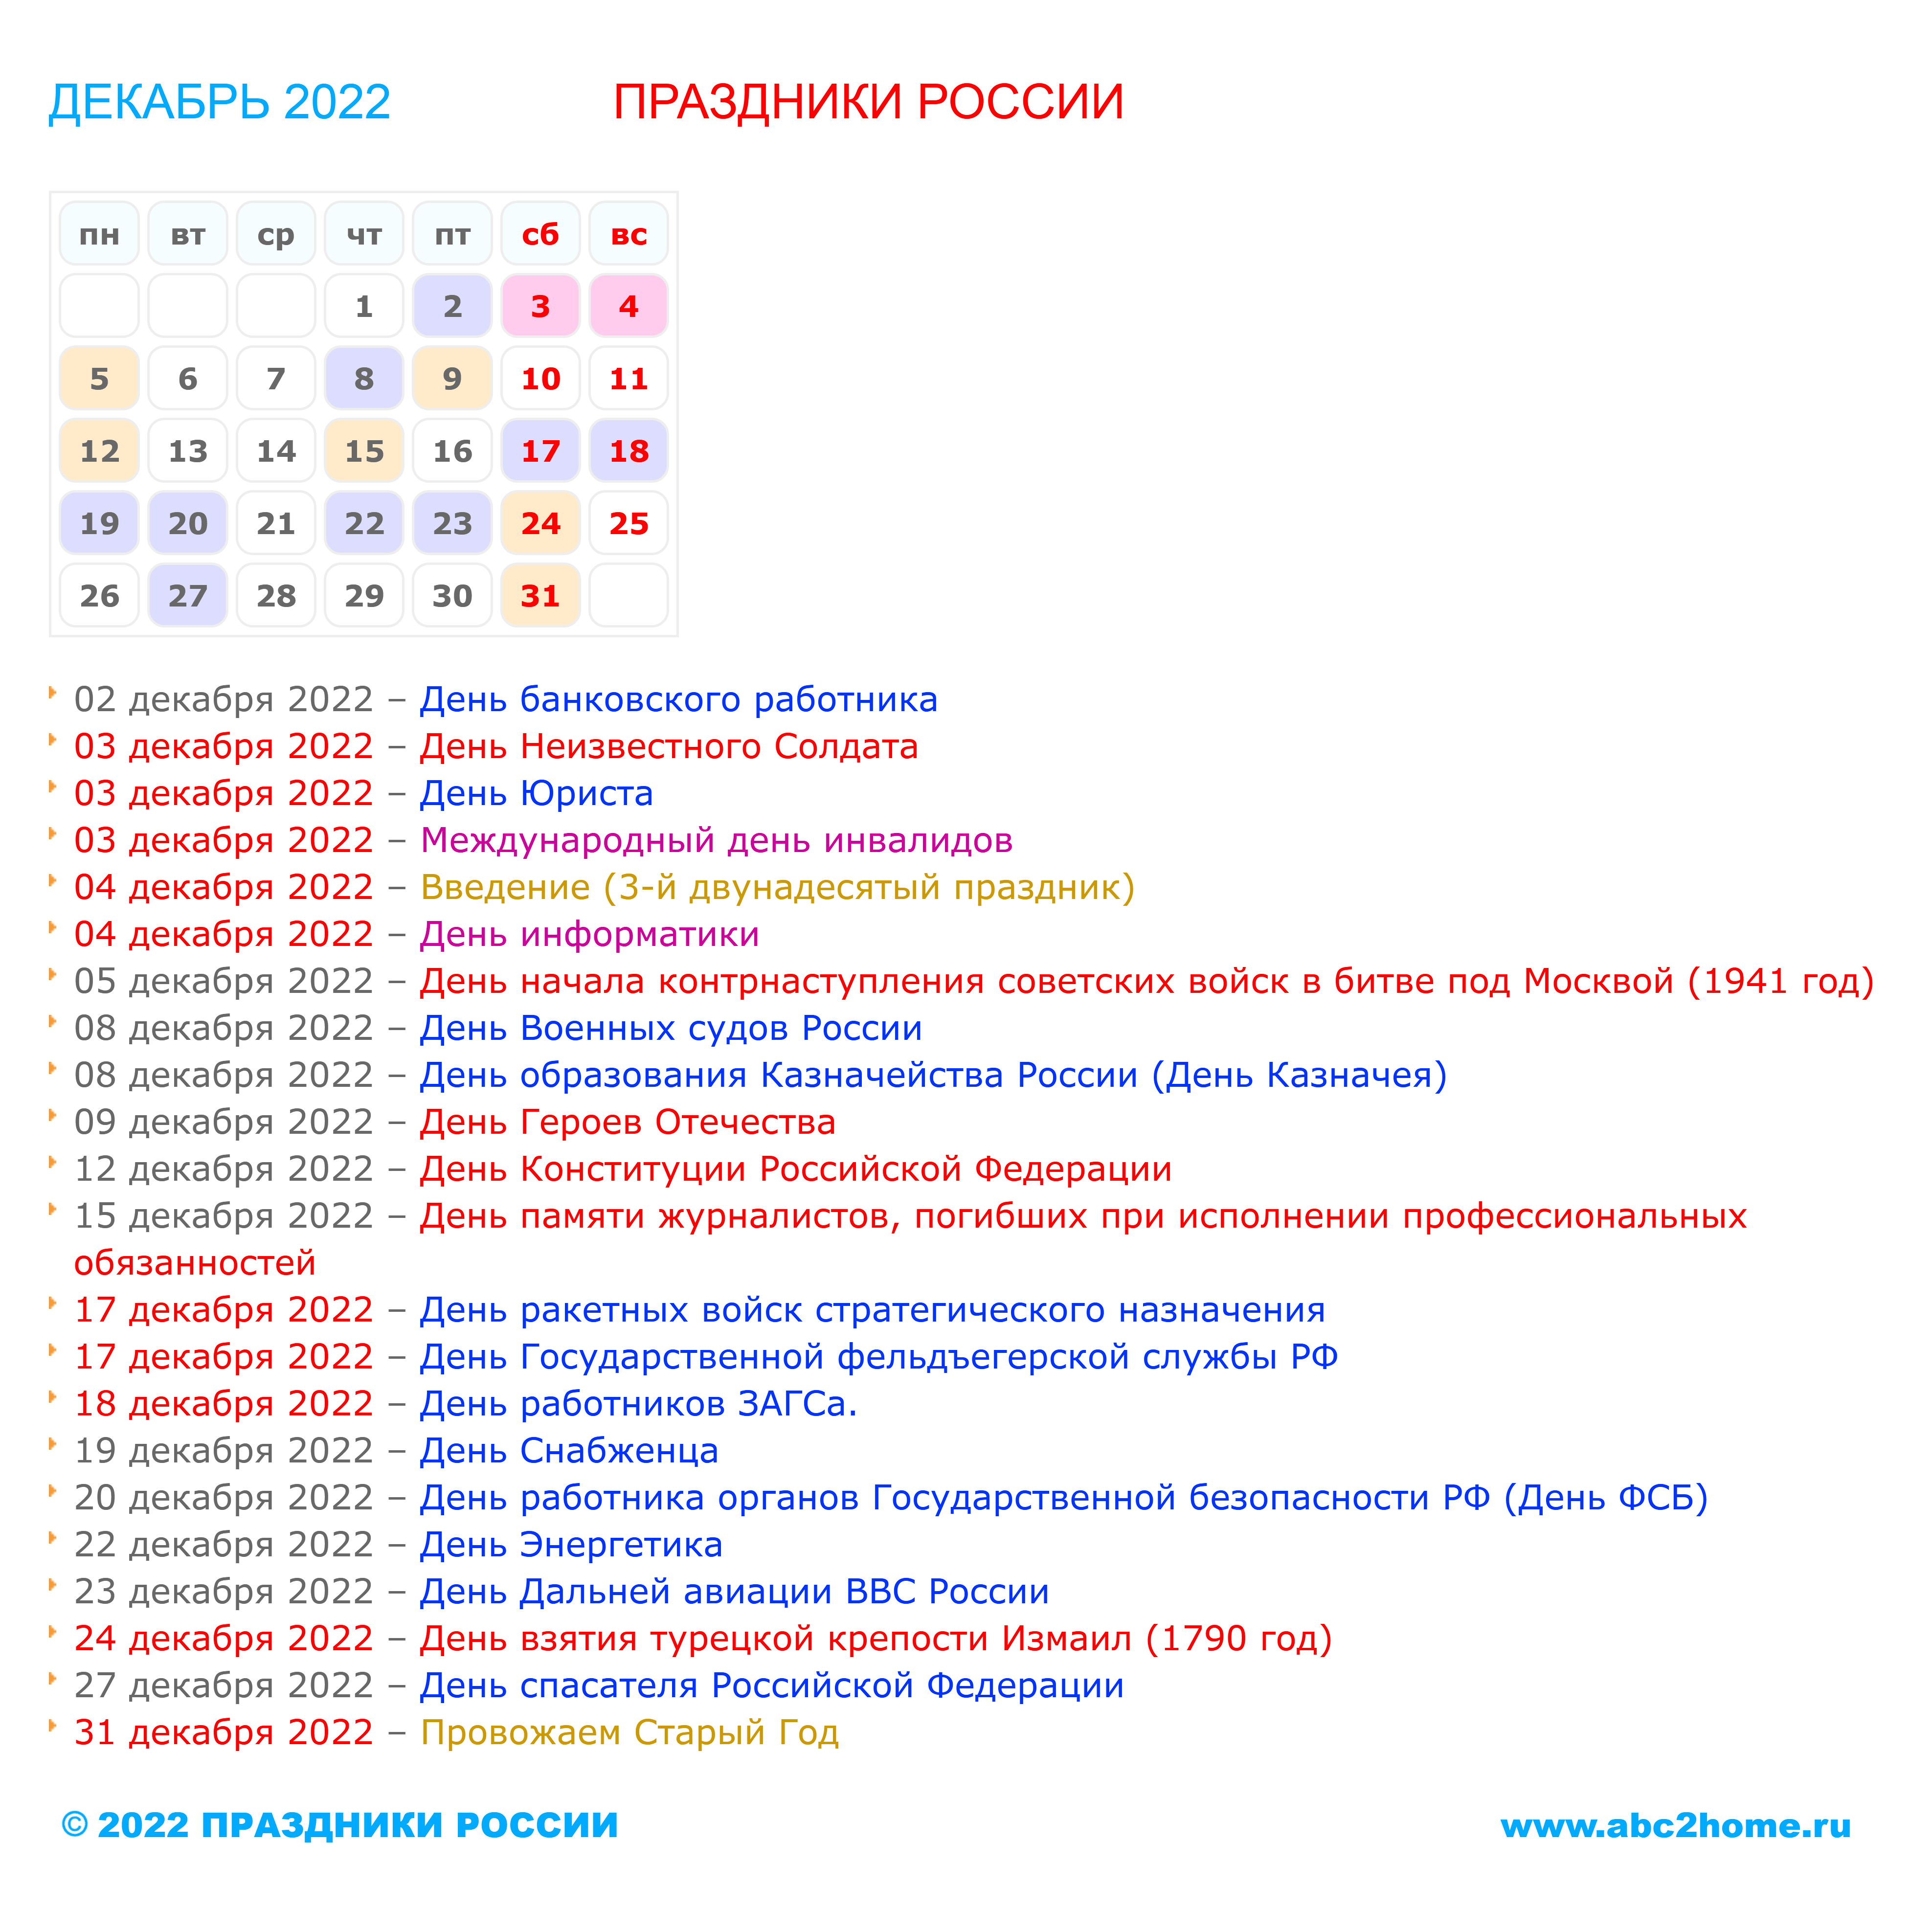 kalendarik_dekabr_2022_big.png